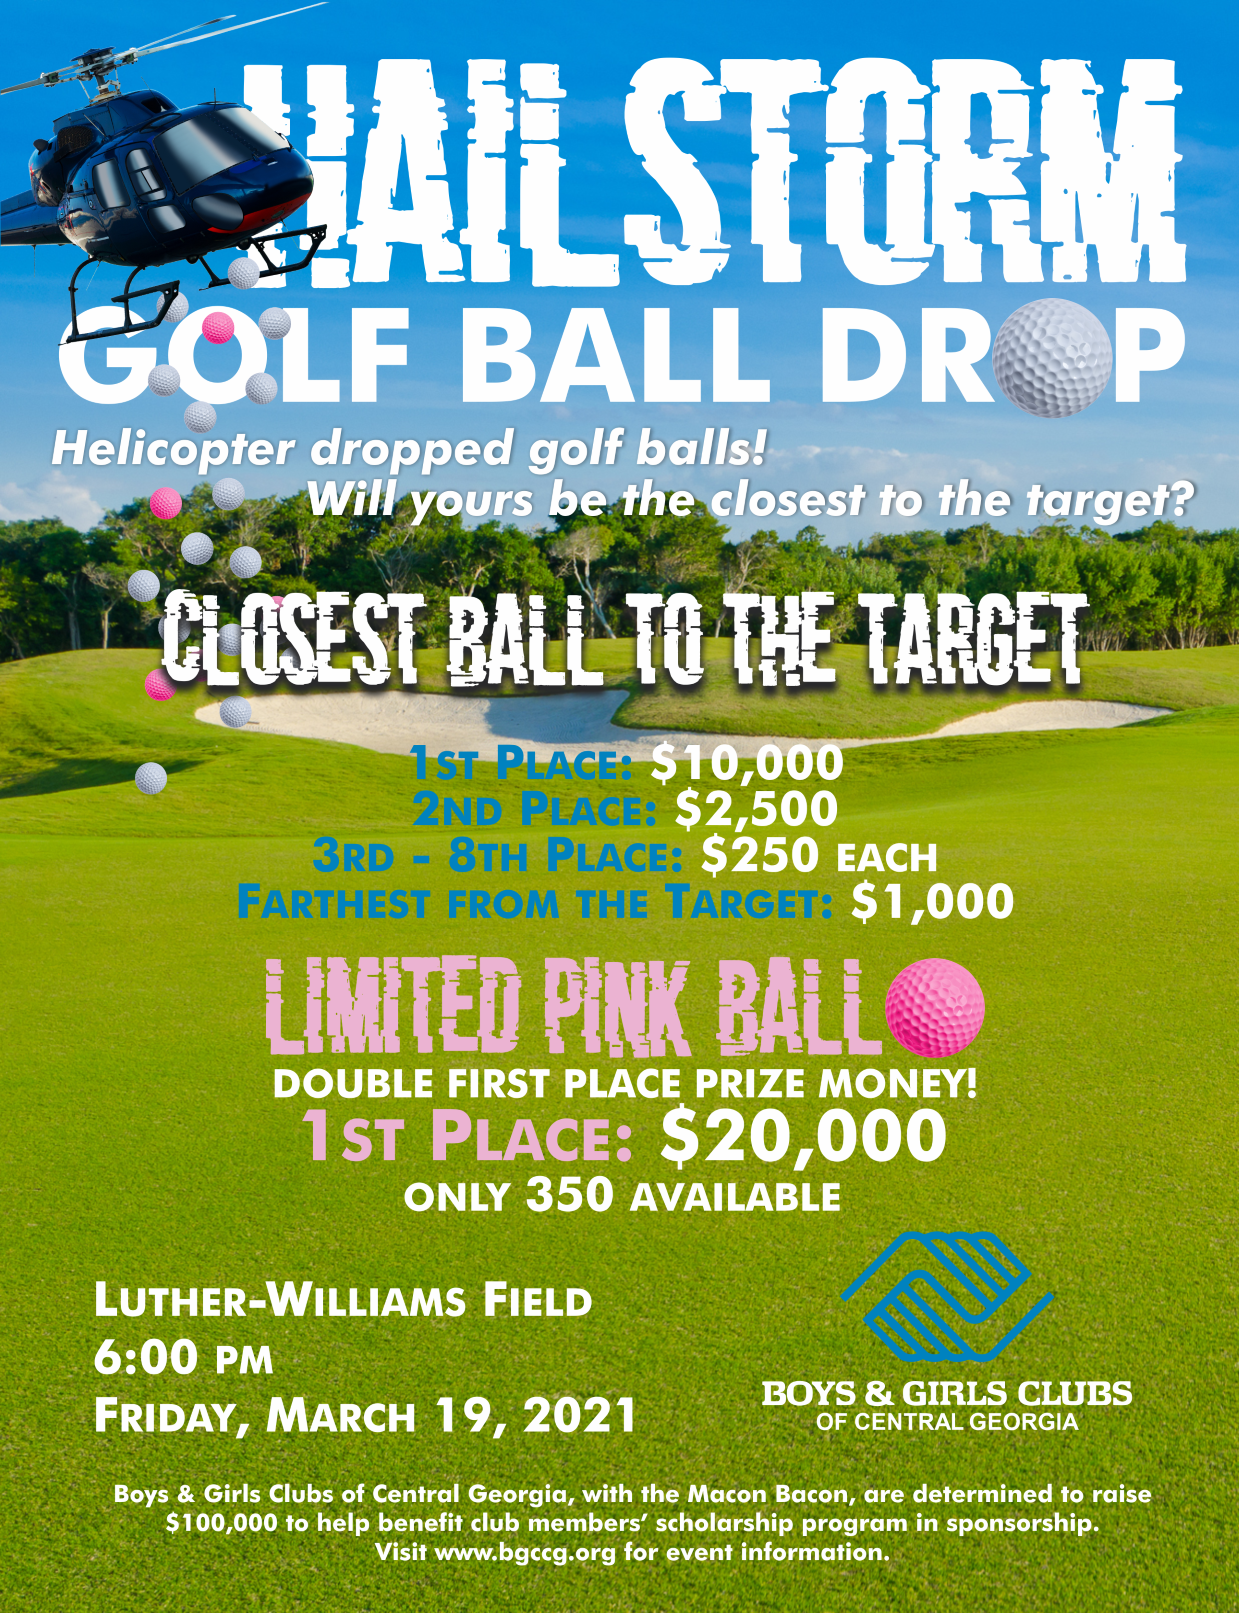 KD Hailstorm Golf Ball Drop